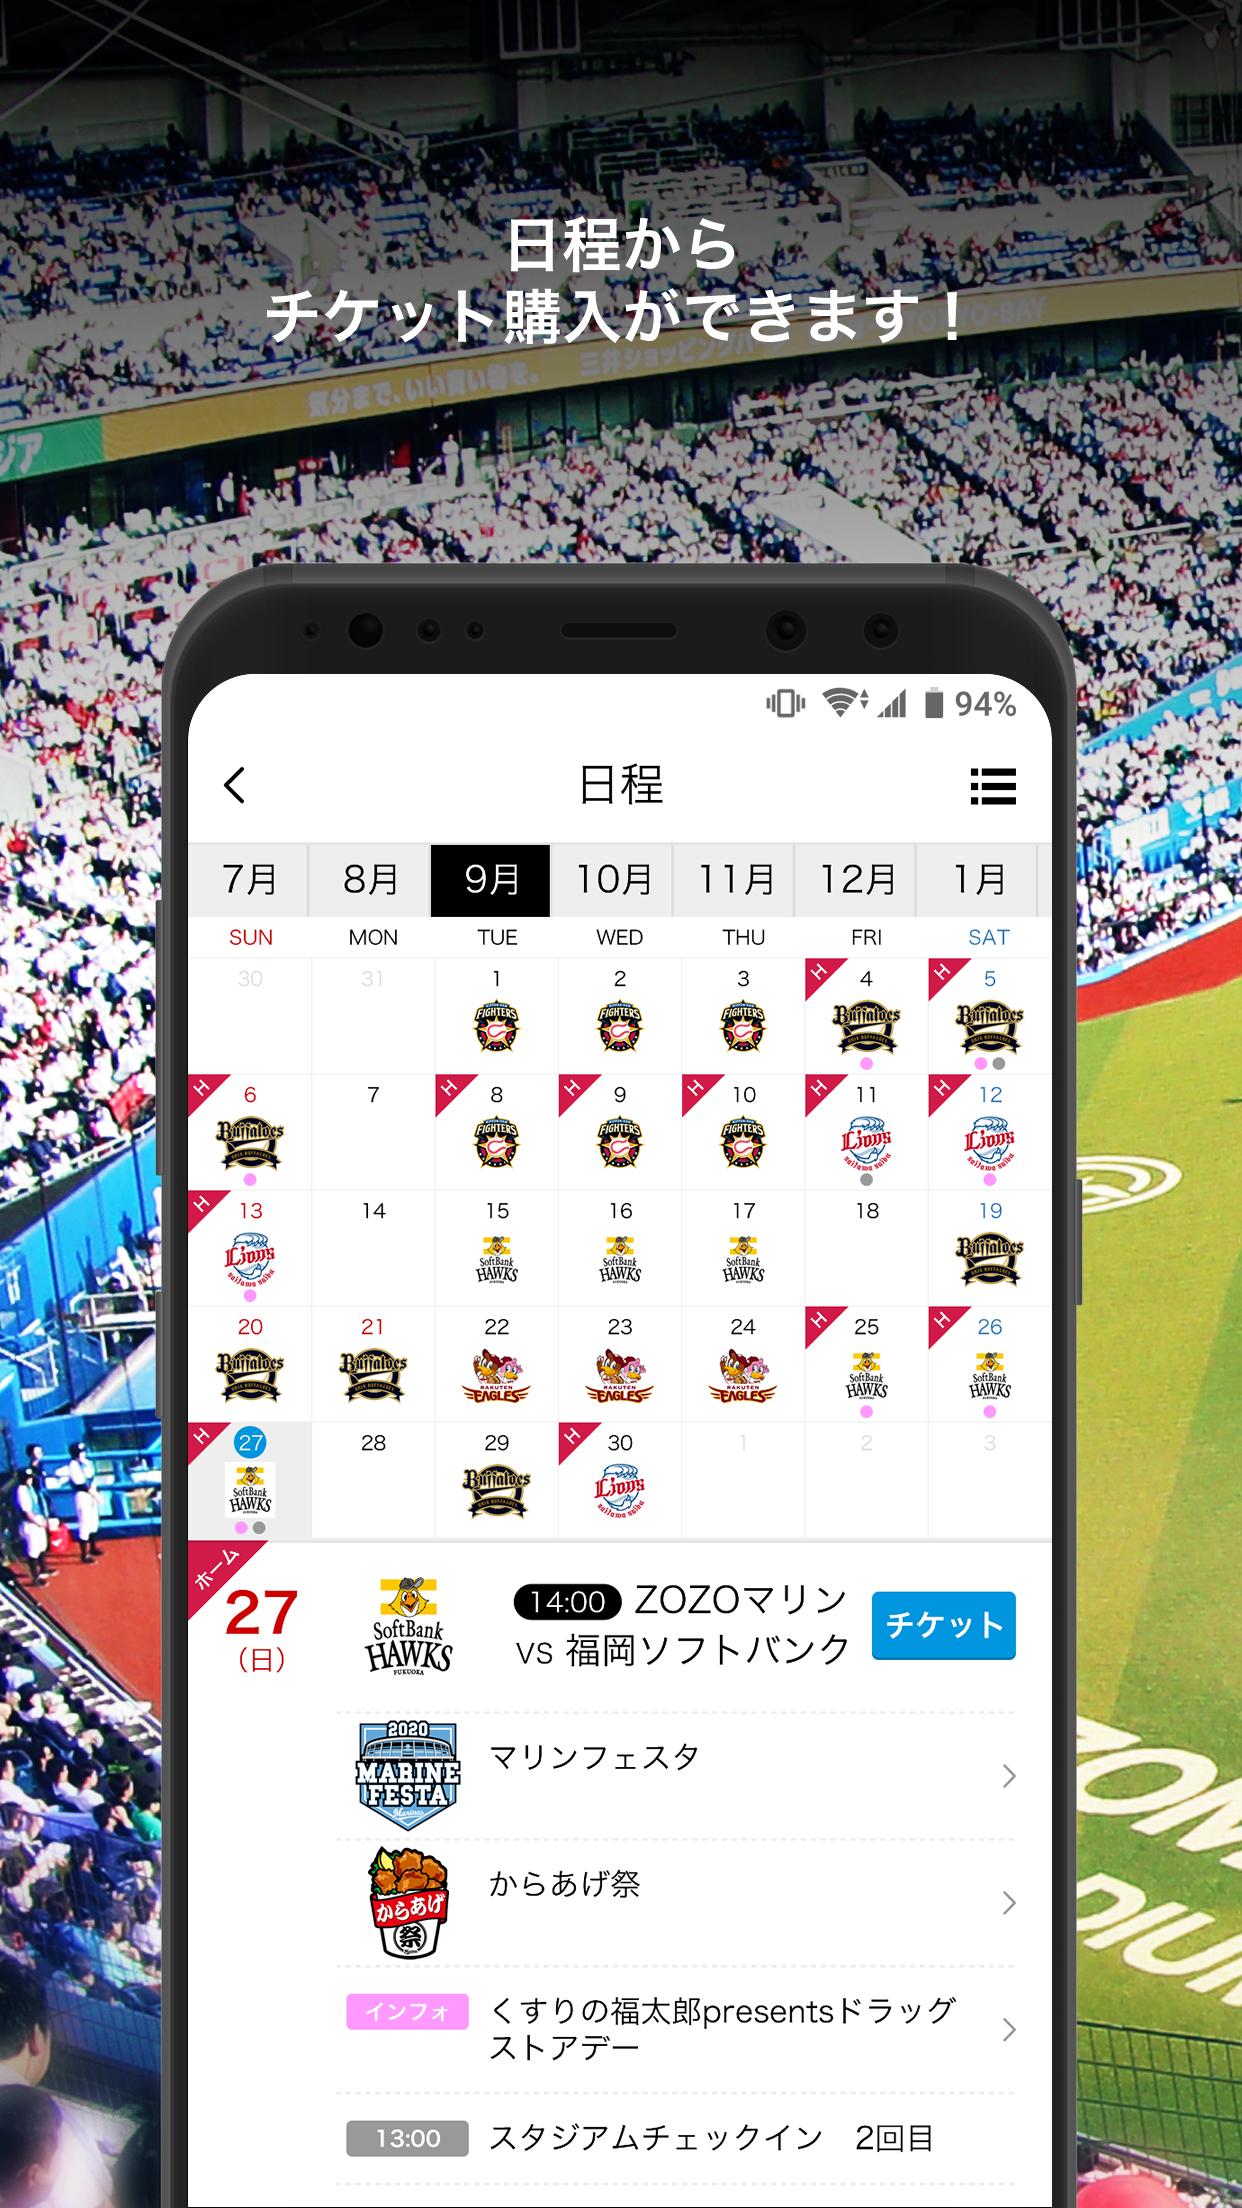 千葉ロッテマリーンズ公式アプリ Mアプリ For Android Apk Download